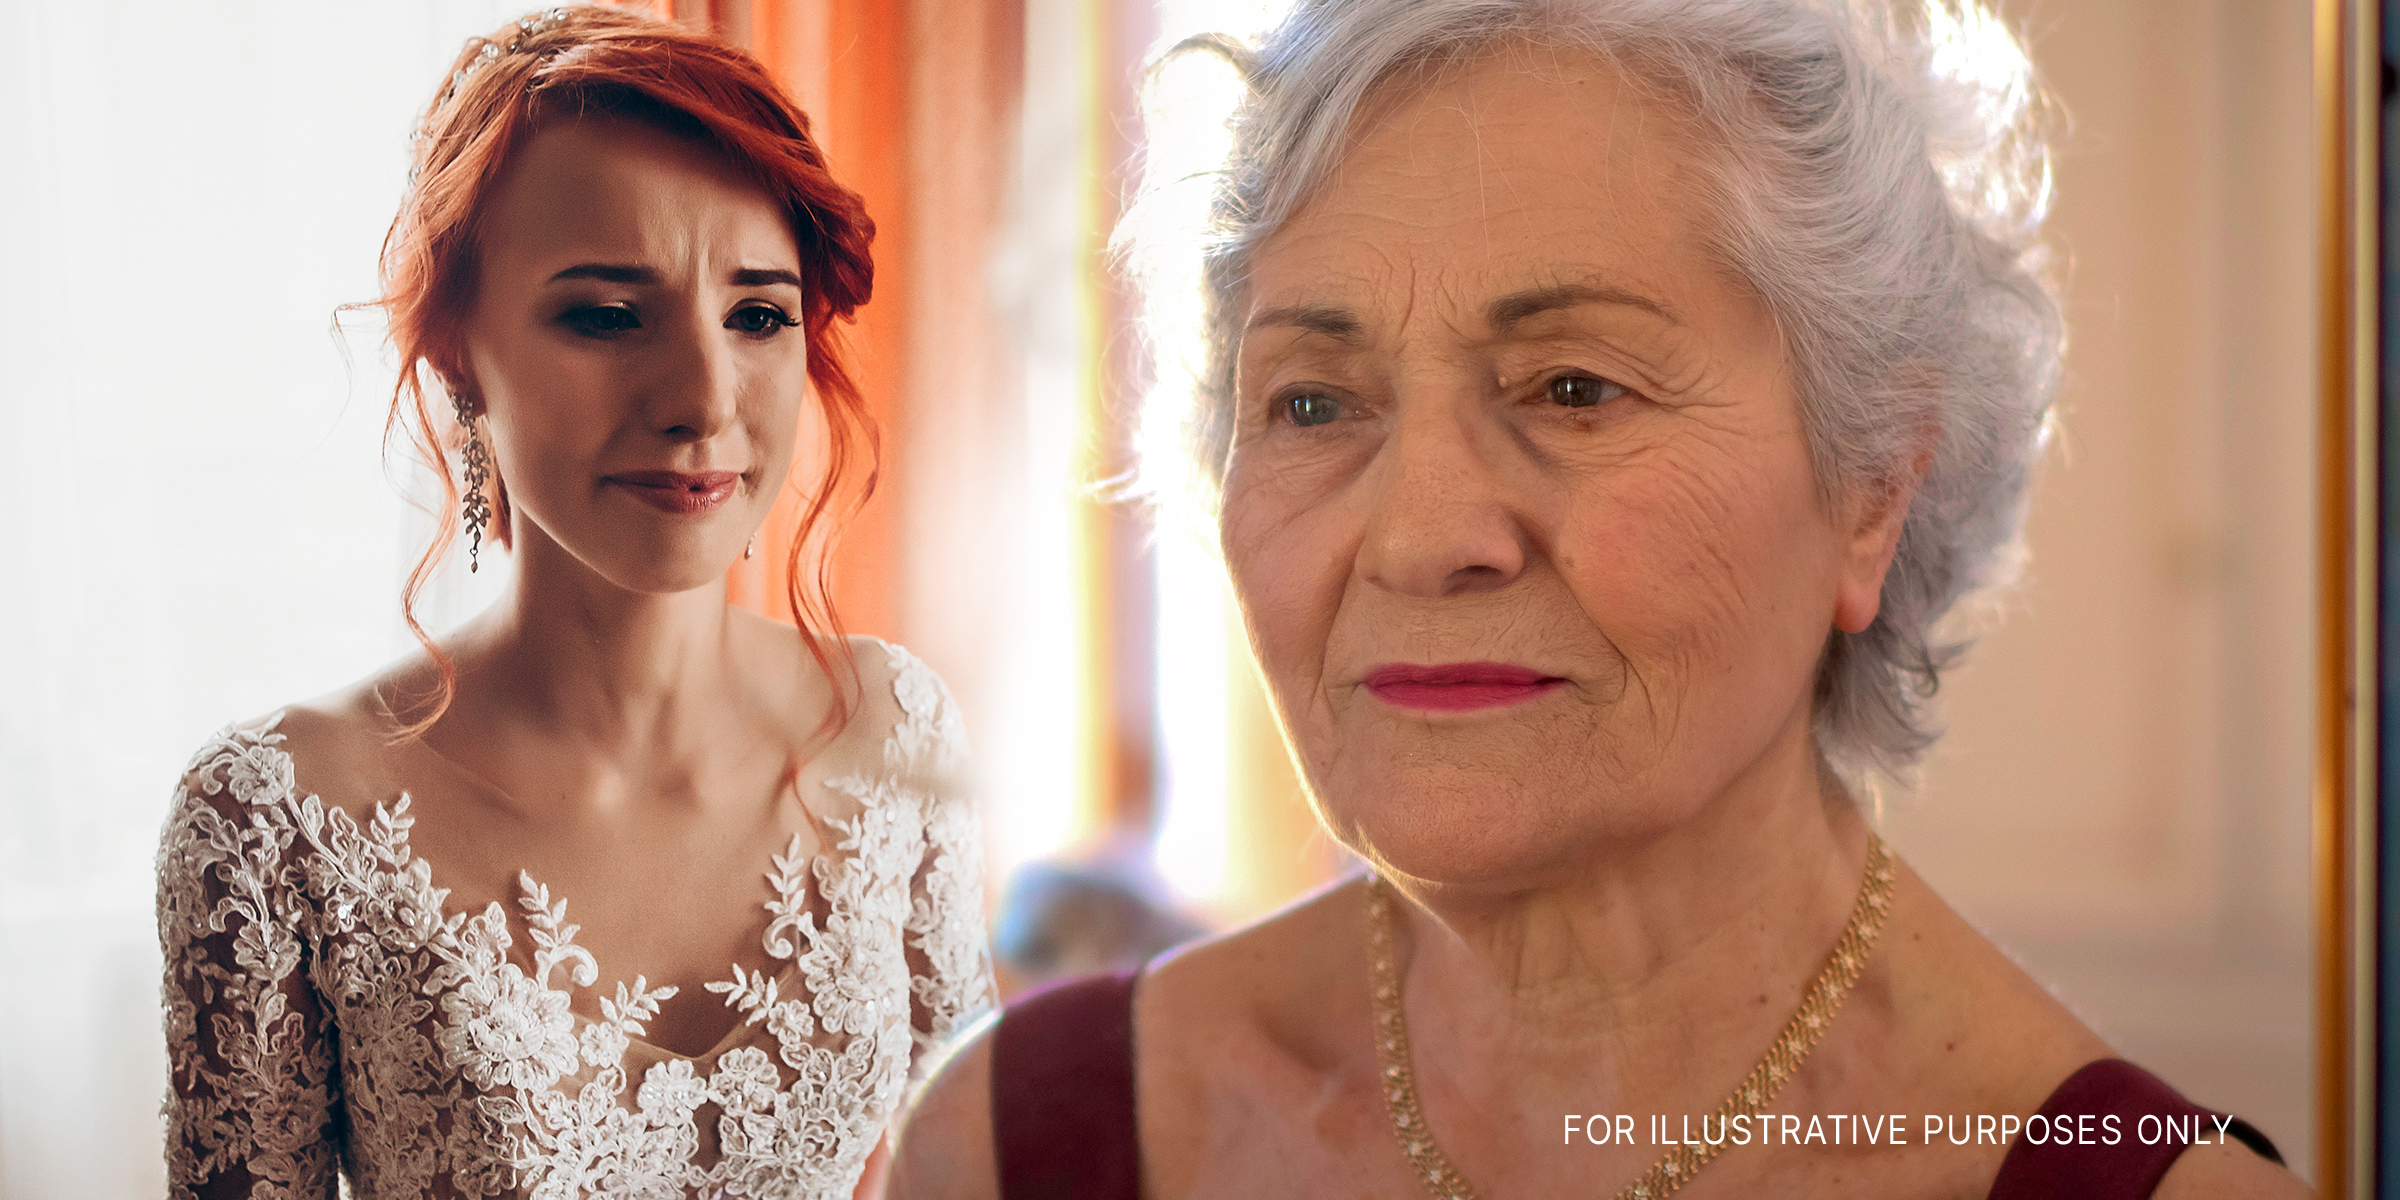 Eine weinende Braut | Eine ältere Frau | Quelle: Shutterstock